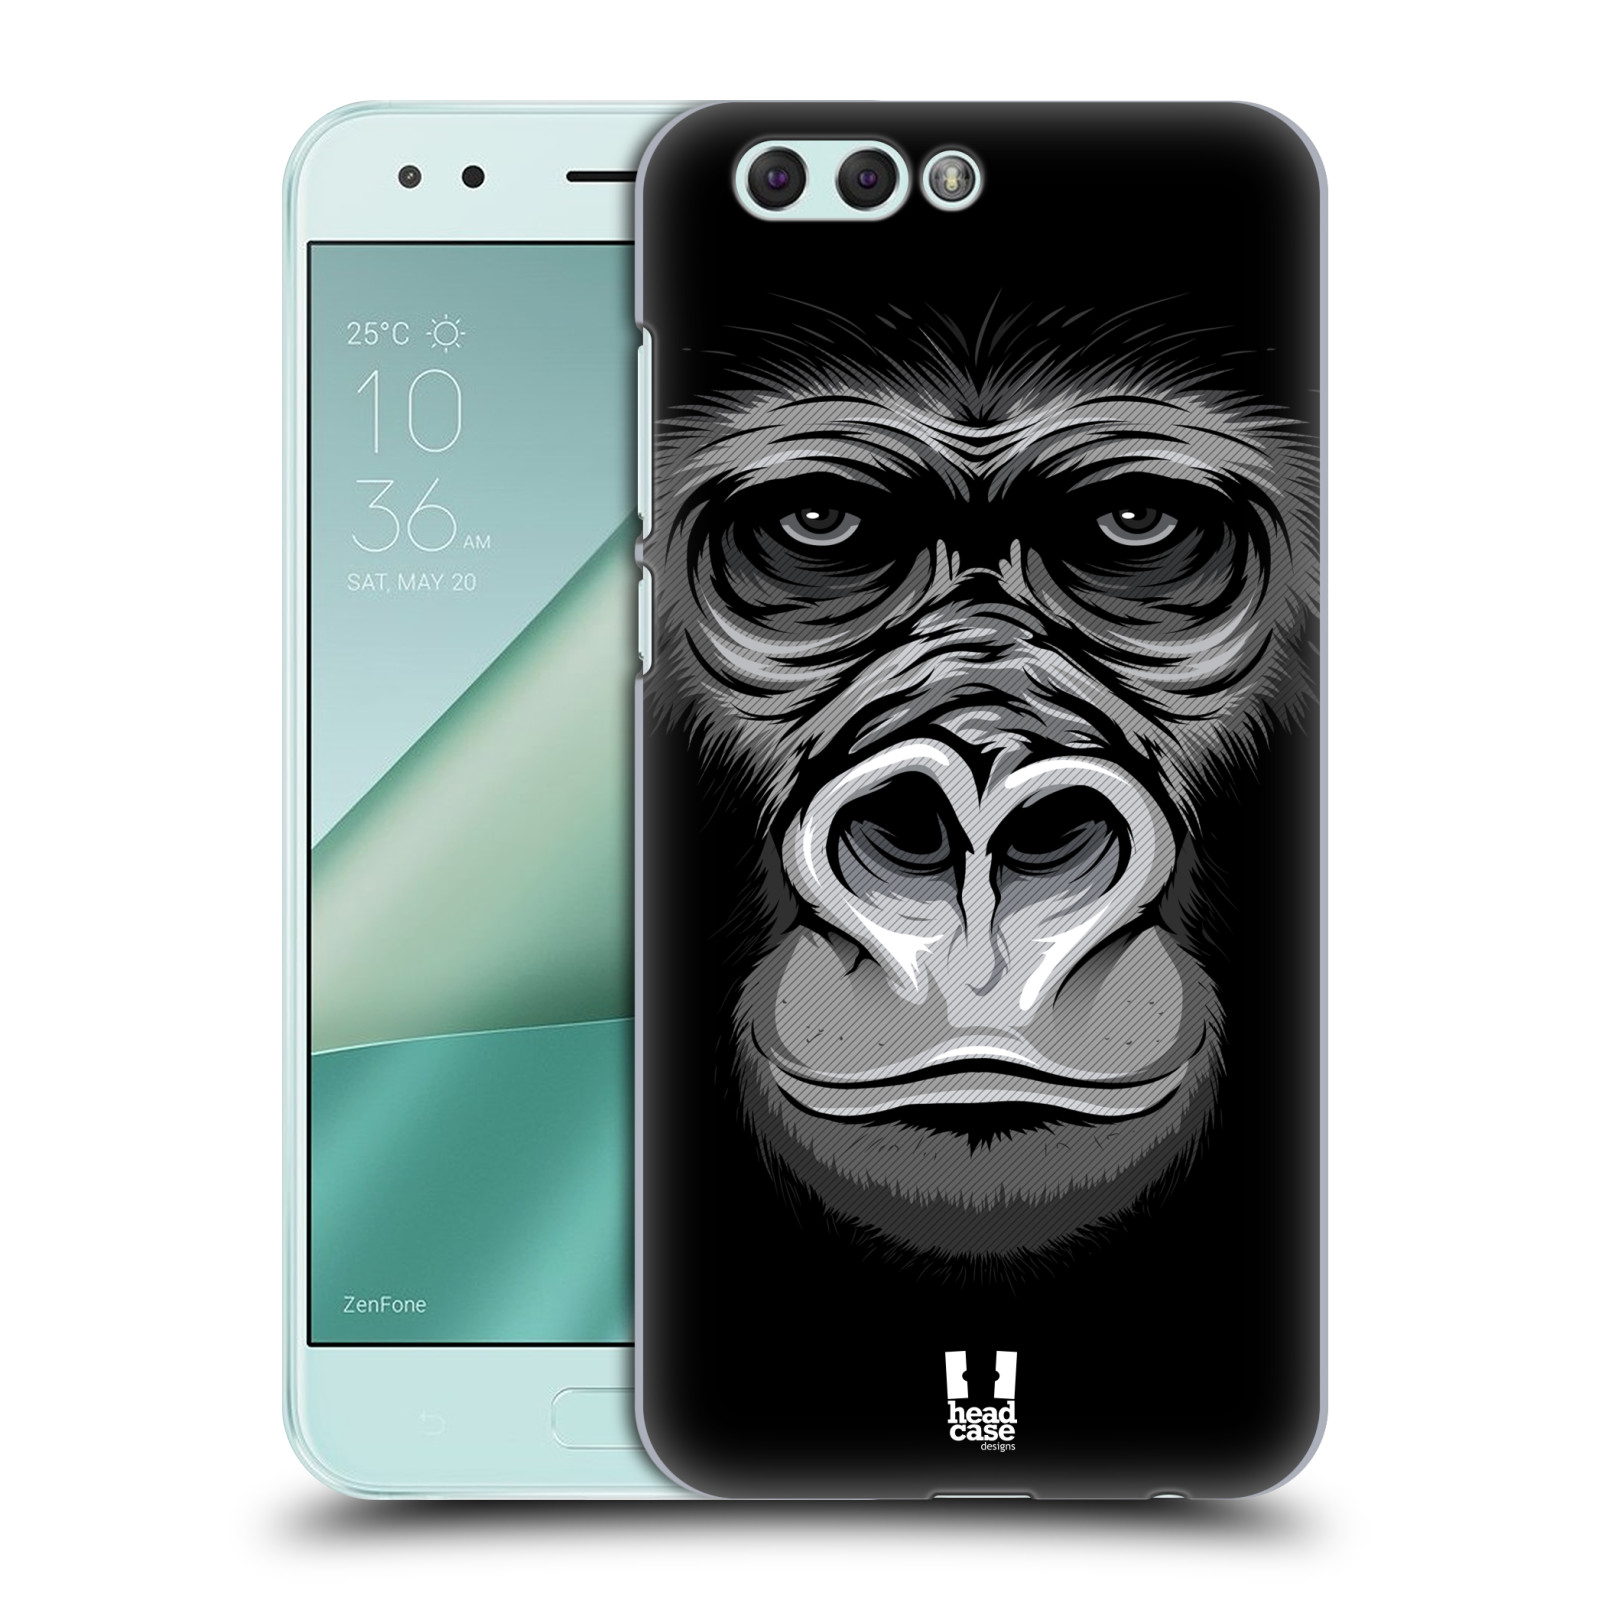 HEAD CASE plastový obal na mobil Asus Zenfone 4 ZE554KL vzor Zvíře kreslená tvář 2 gorila